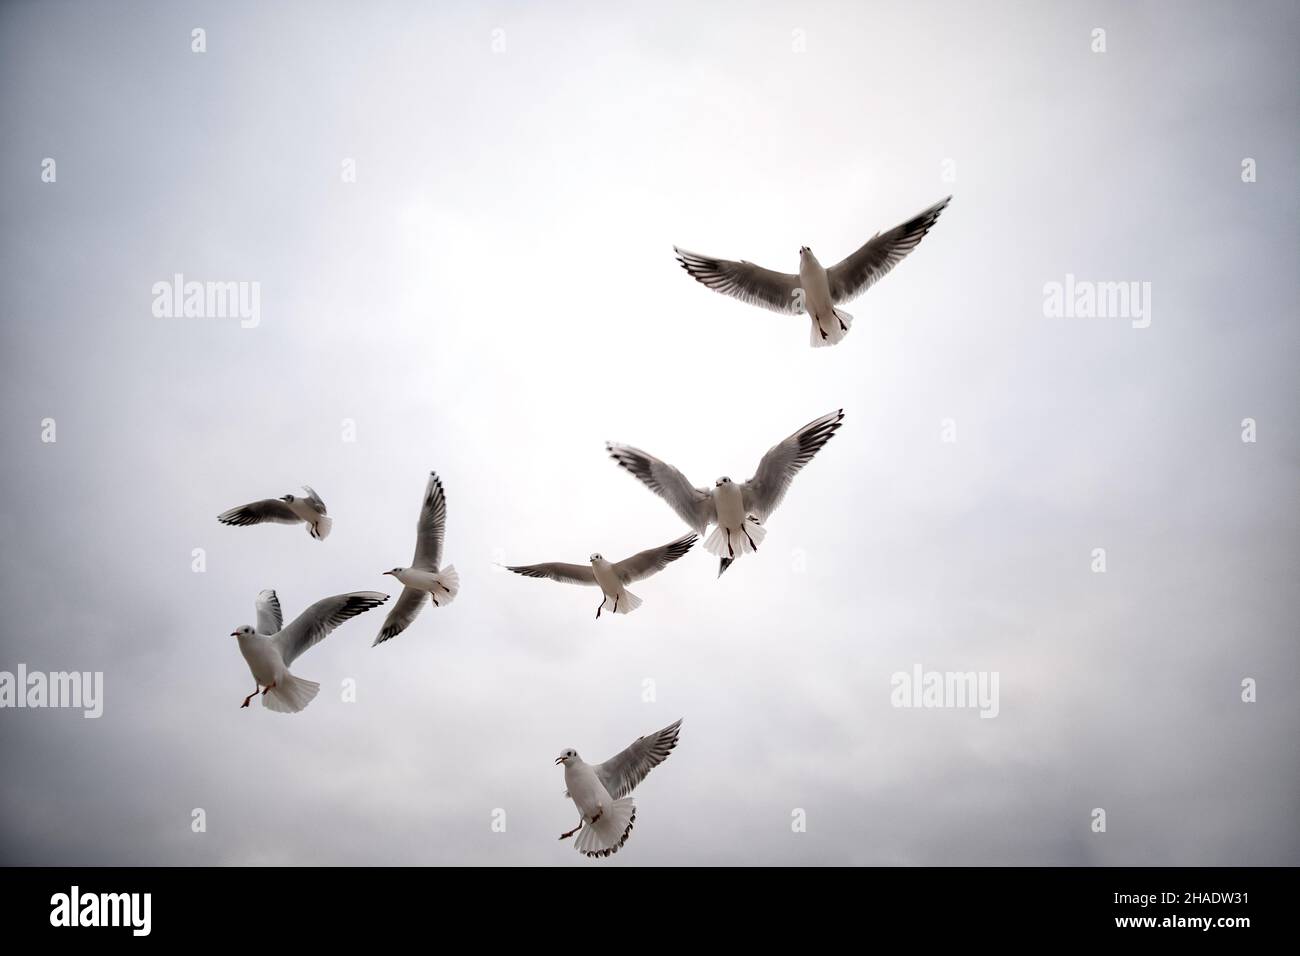 un rebaño de aves marinas luchando sobre un trozo de pan lanzado al aire mostrando impresionantes habilidades aéreas Foto de stock